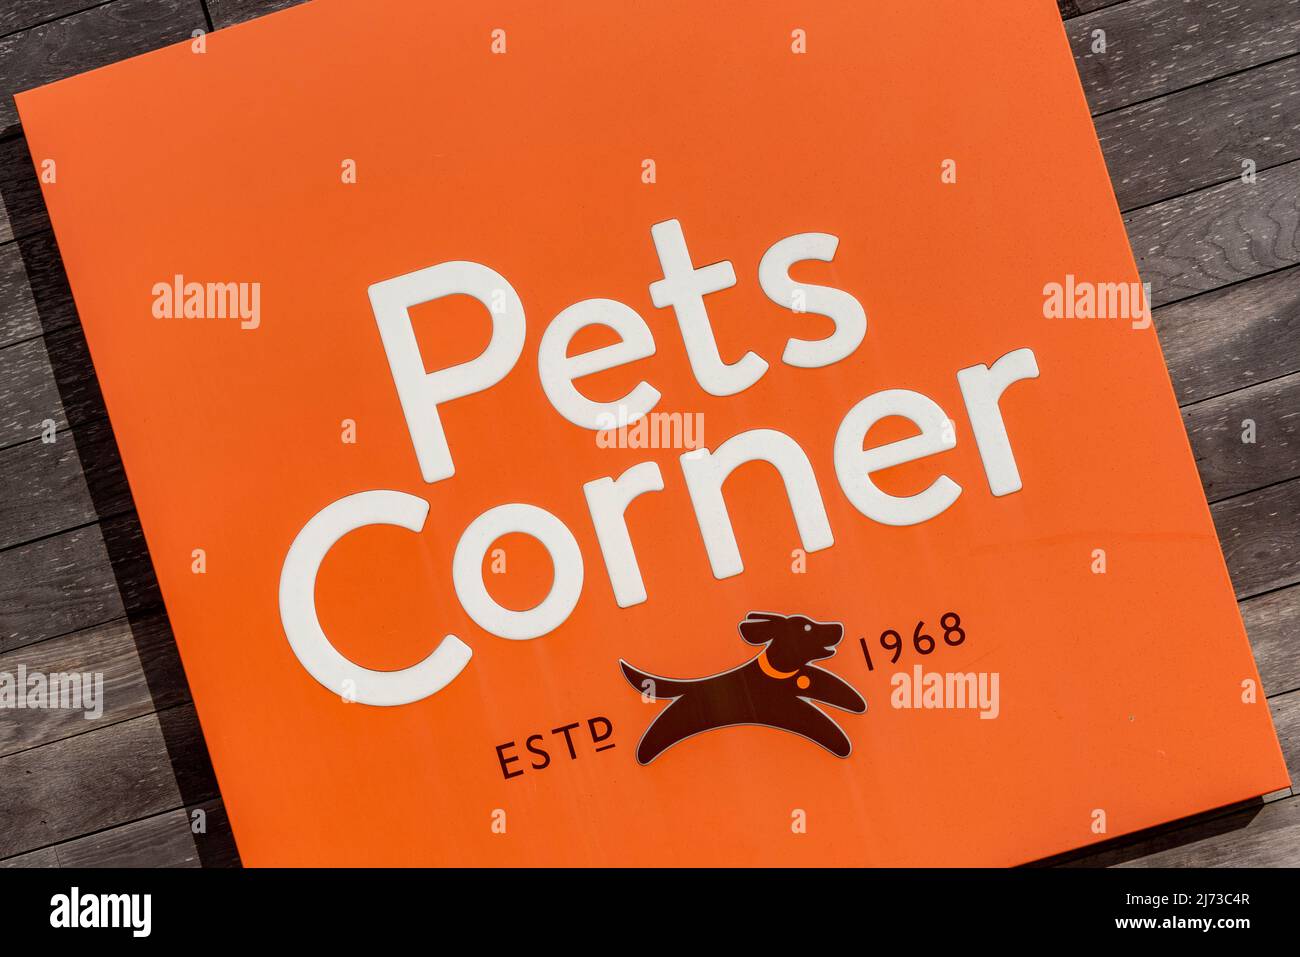 Logo of British pet store chain Pets Corner Stock Photo